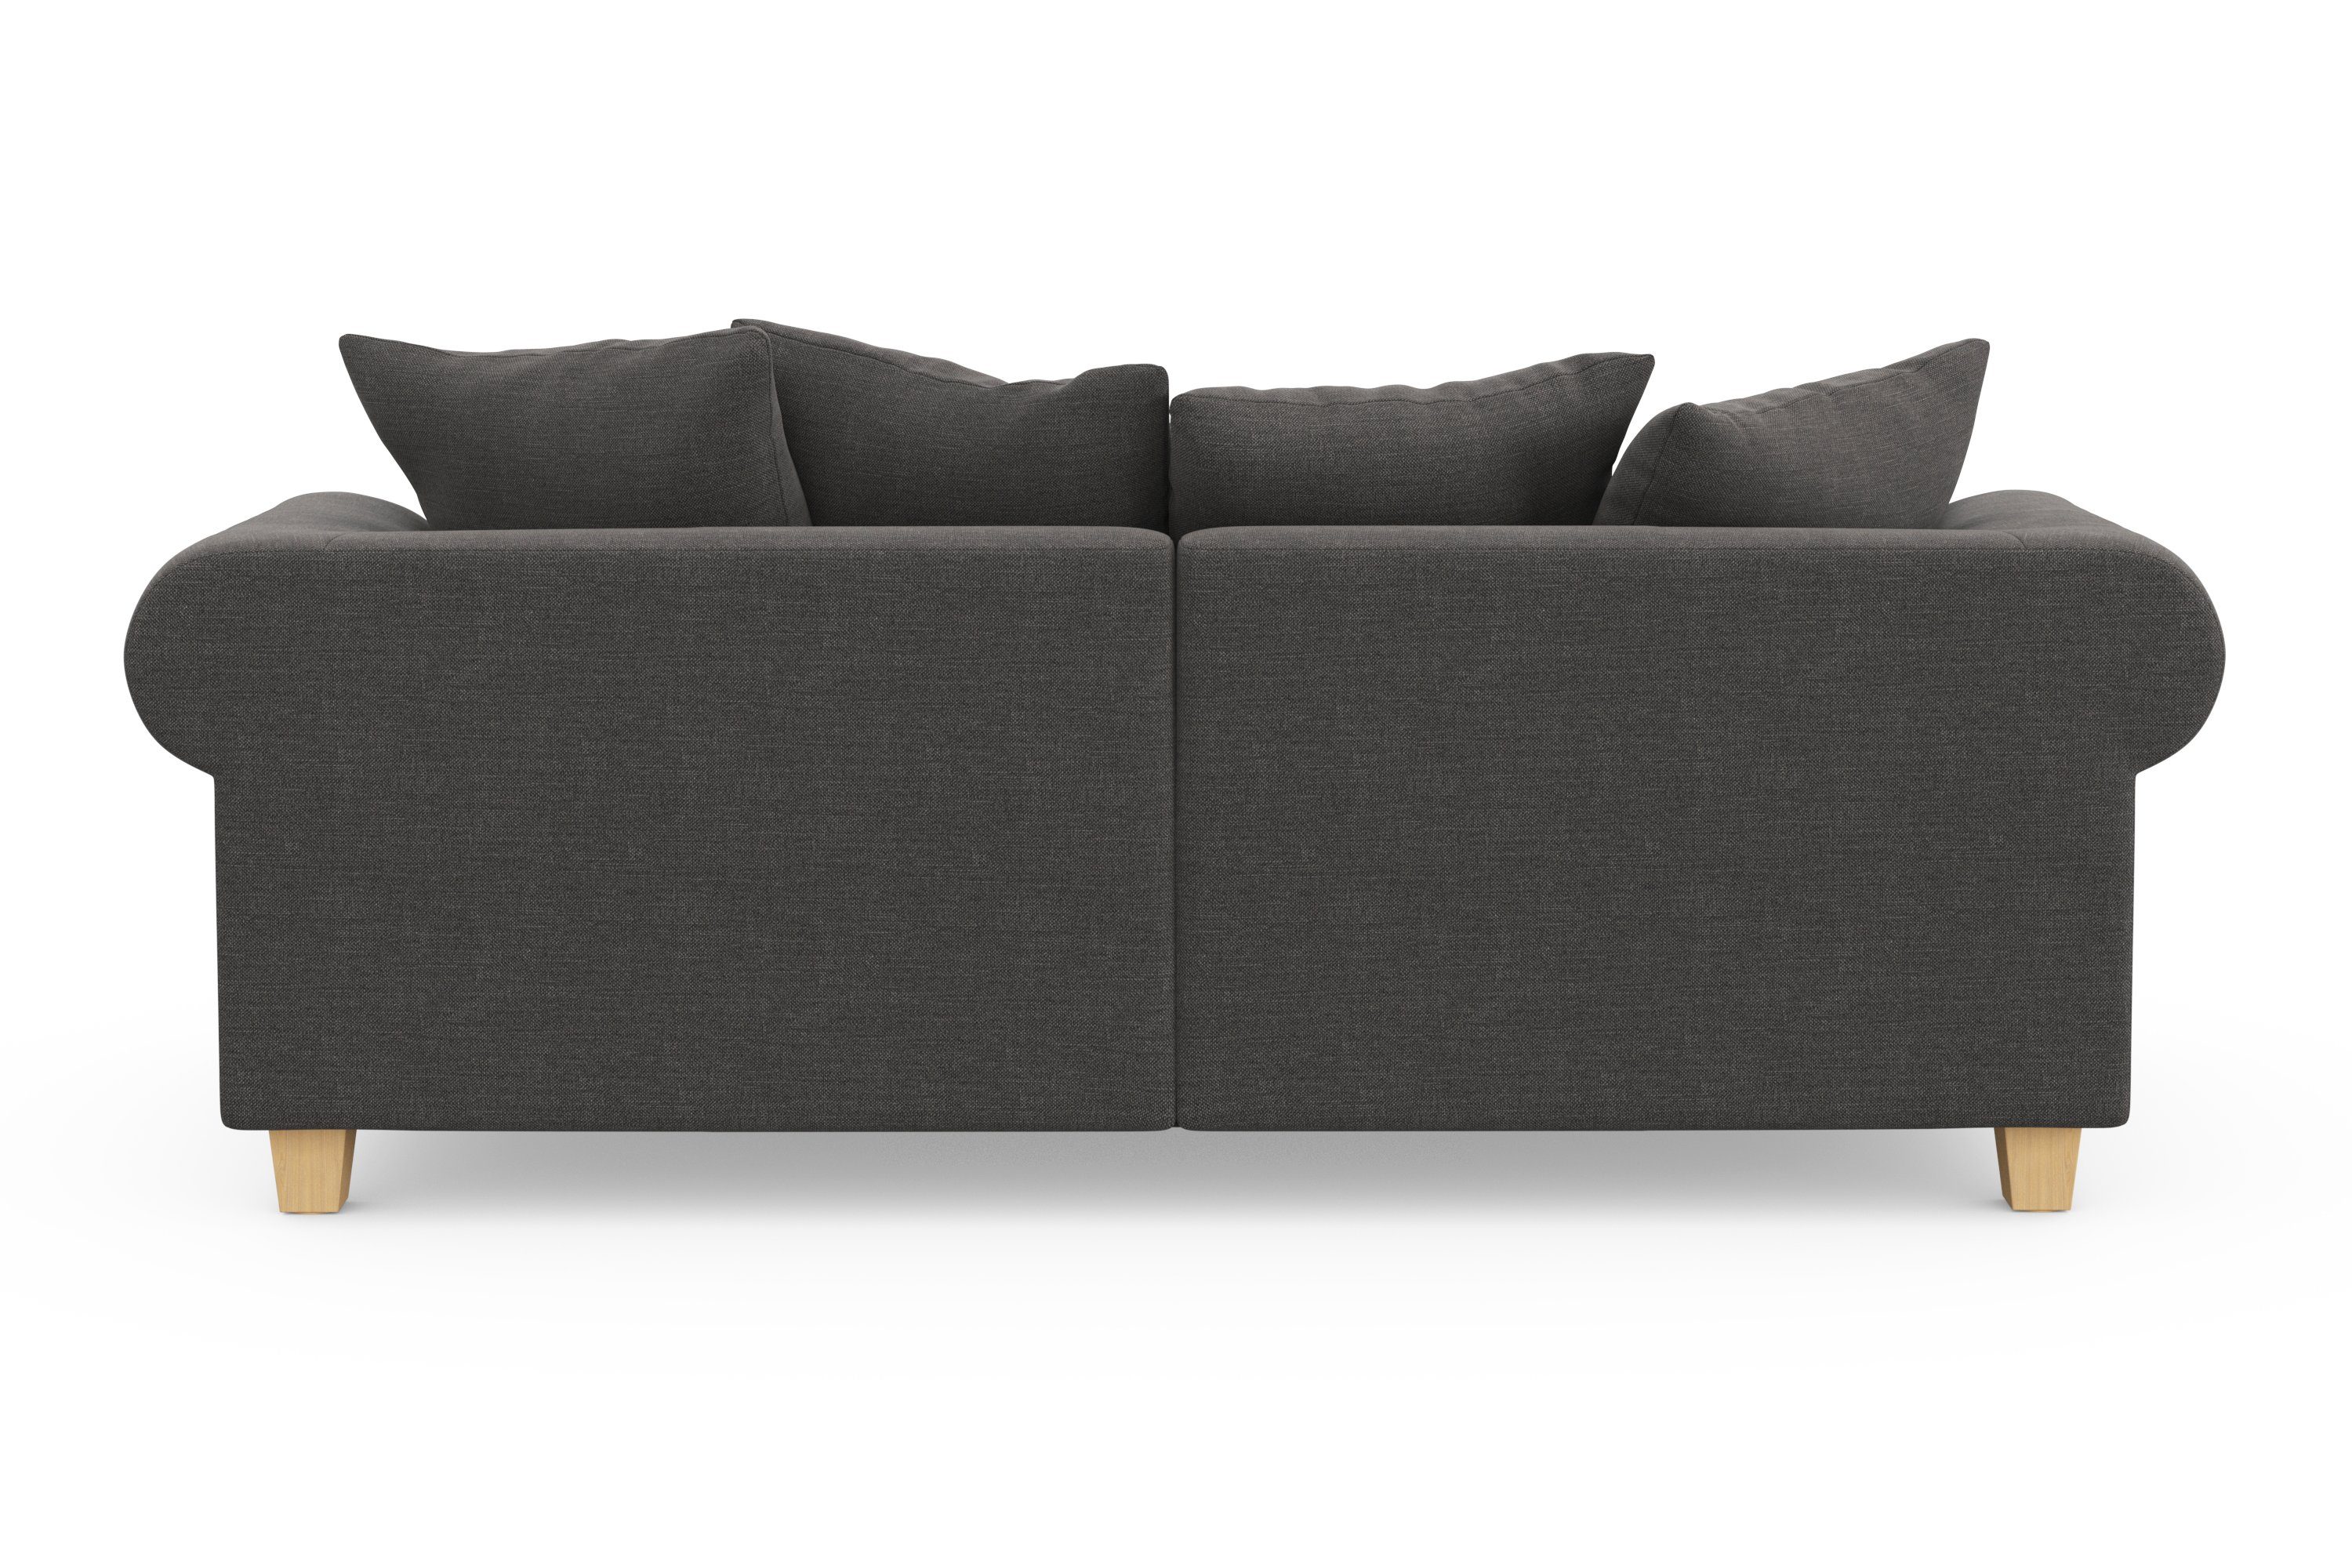 Home affaire Big-Sofa Queenie Megasofa, viele kuschelige zeitlosem mit Kissen Design, weichem Sitzkomfort und 2 Teile